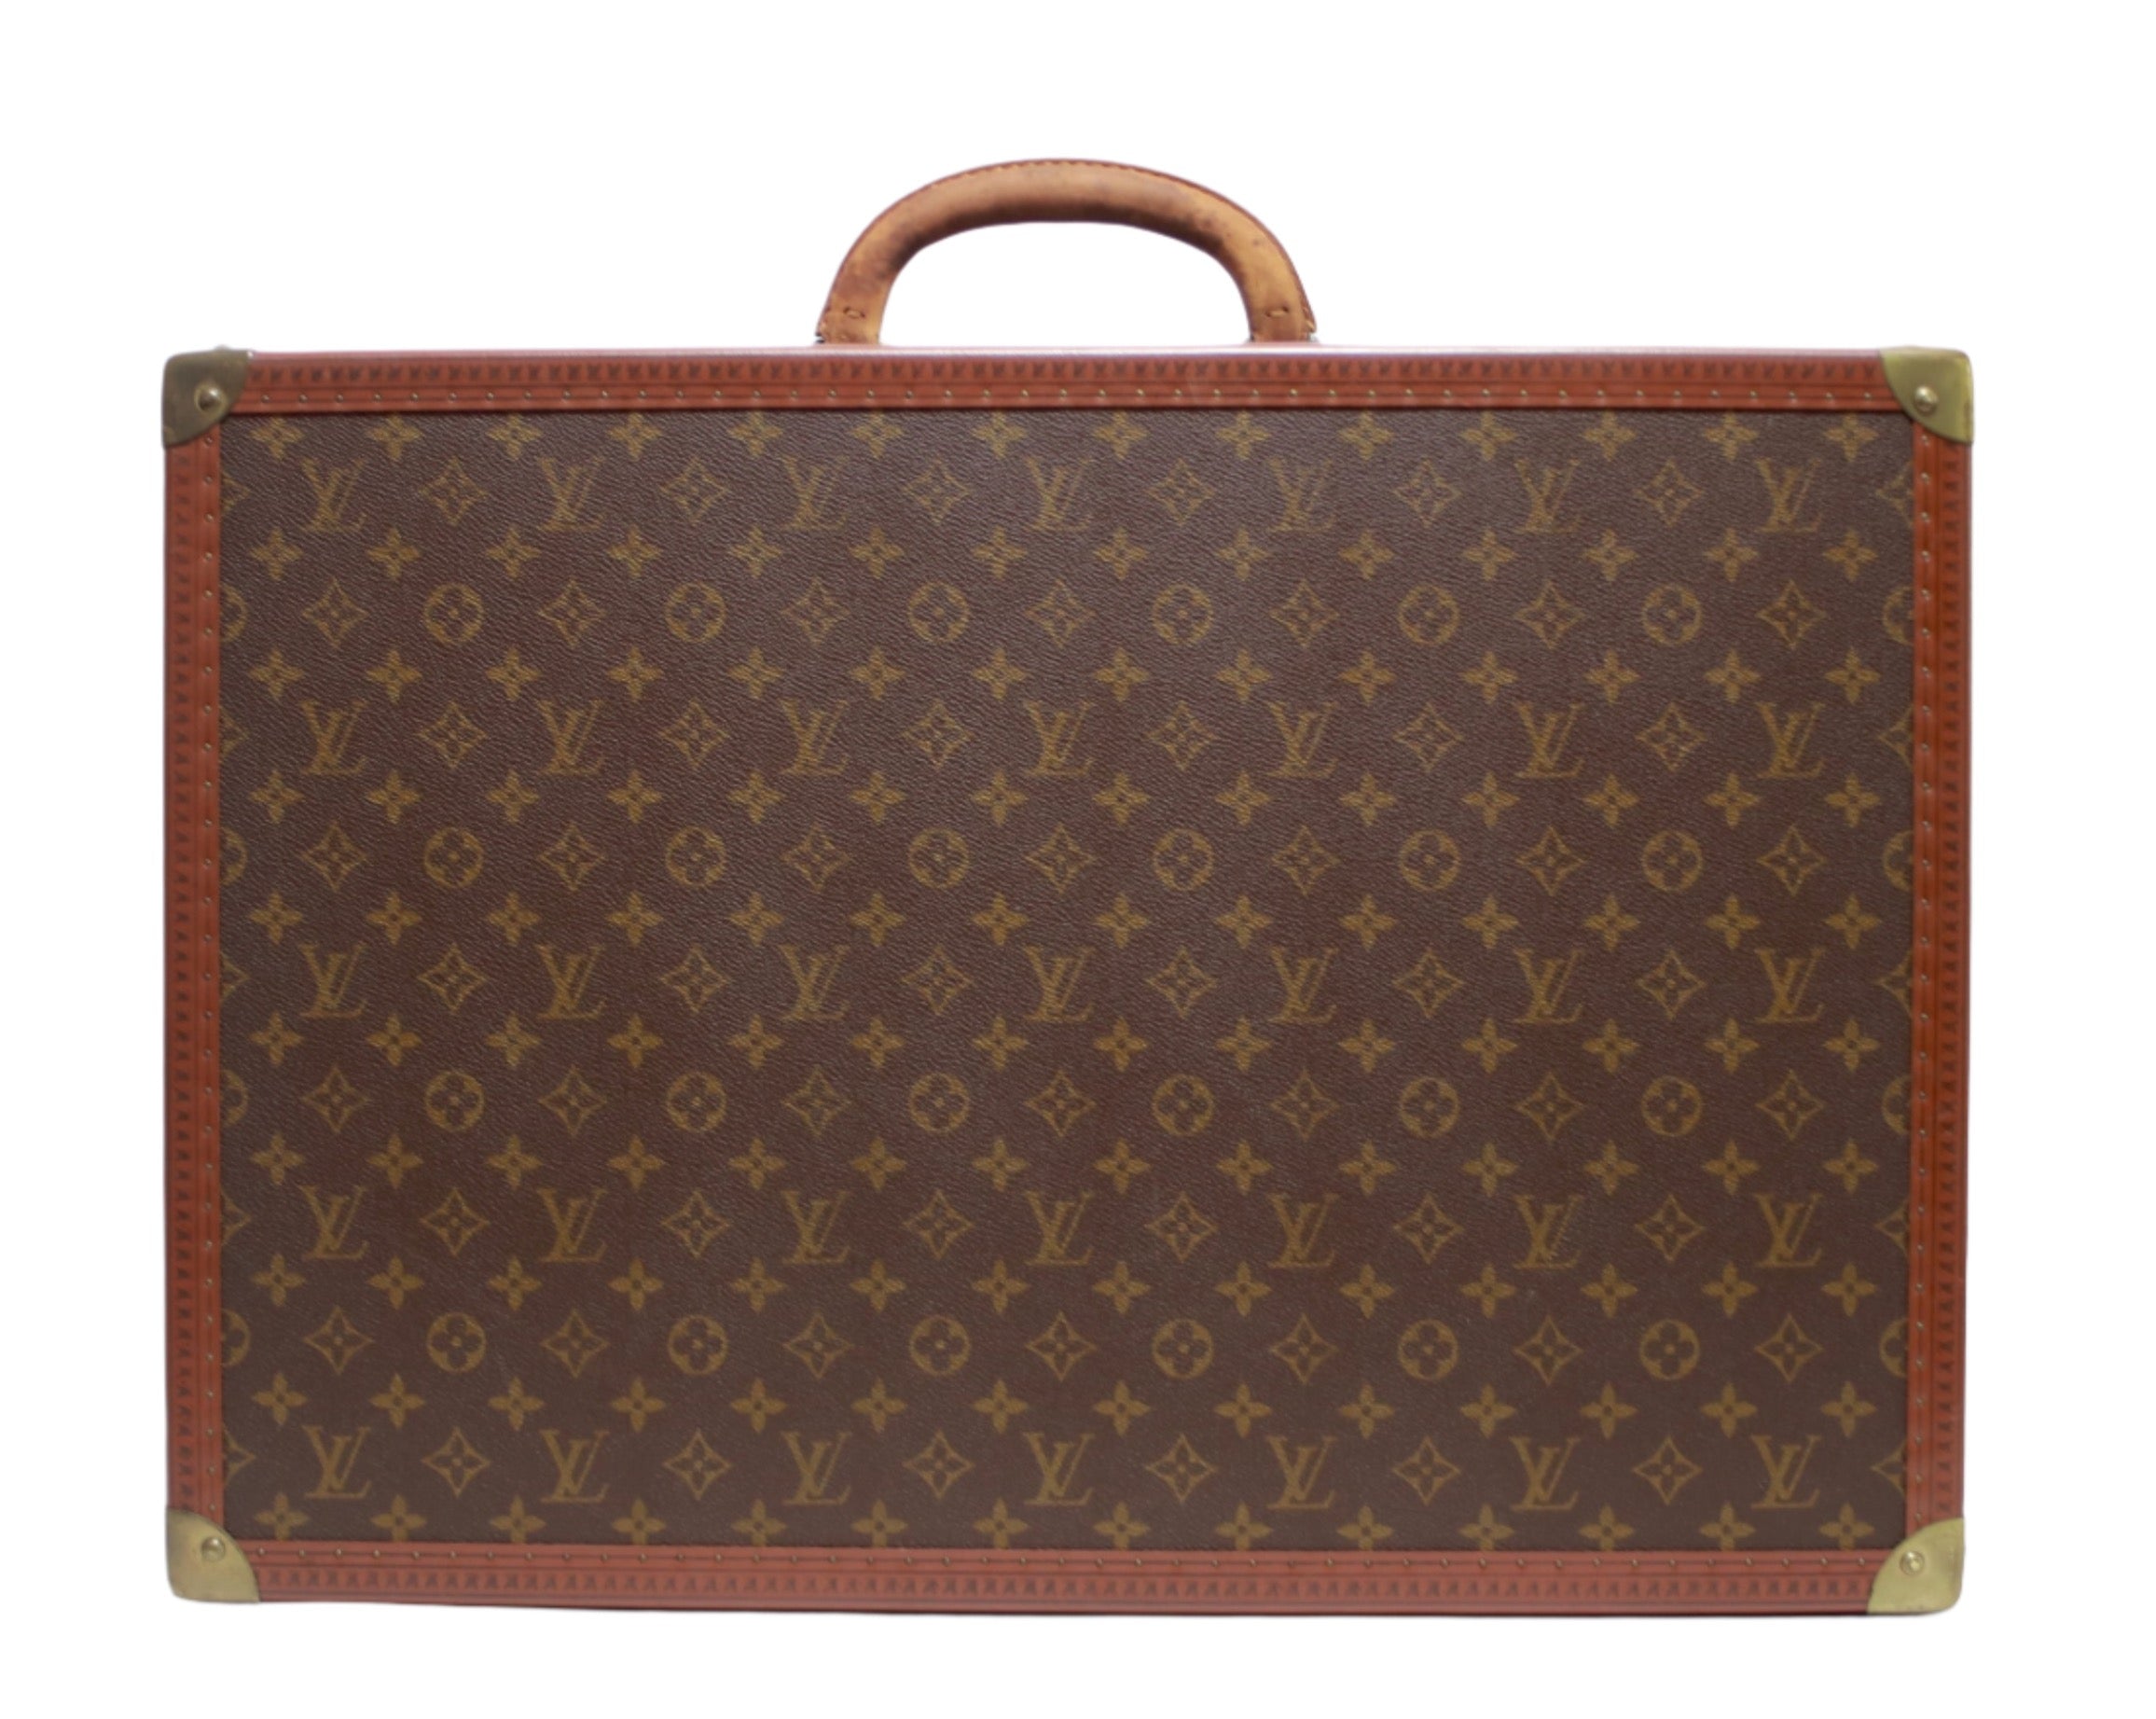 Louis Vuitton Vintage Bisten 60 Suitcase (8476)